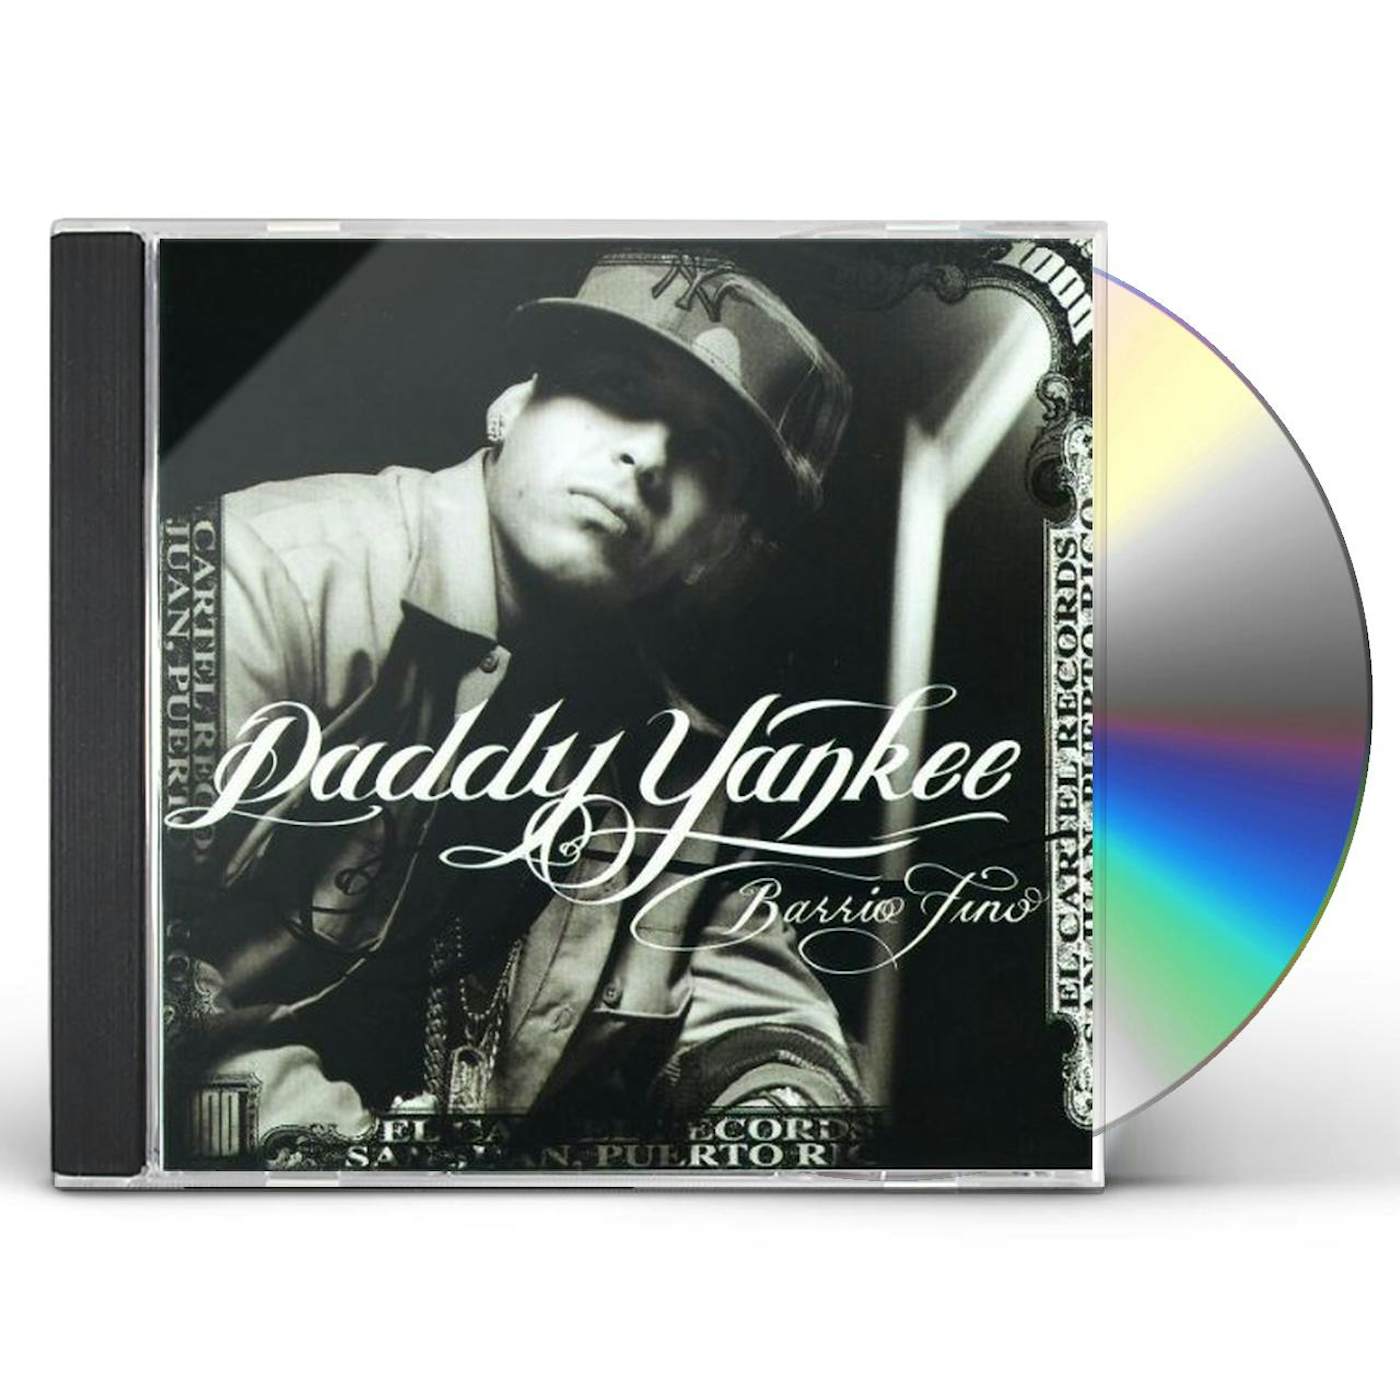 Daddy Yankee - Barrio fino